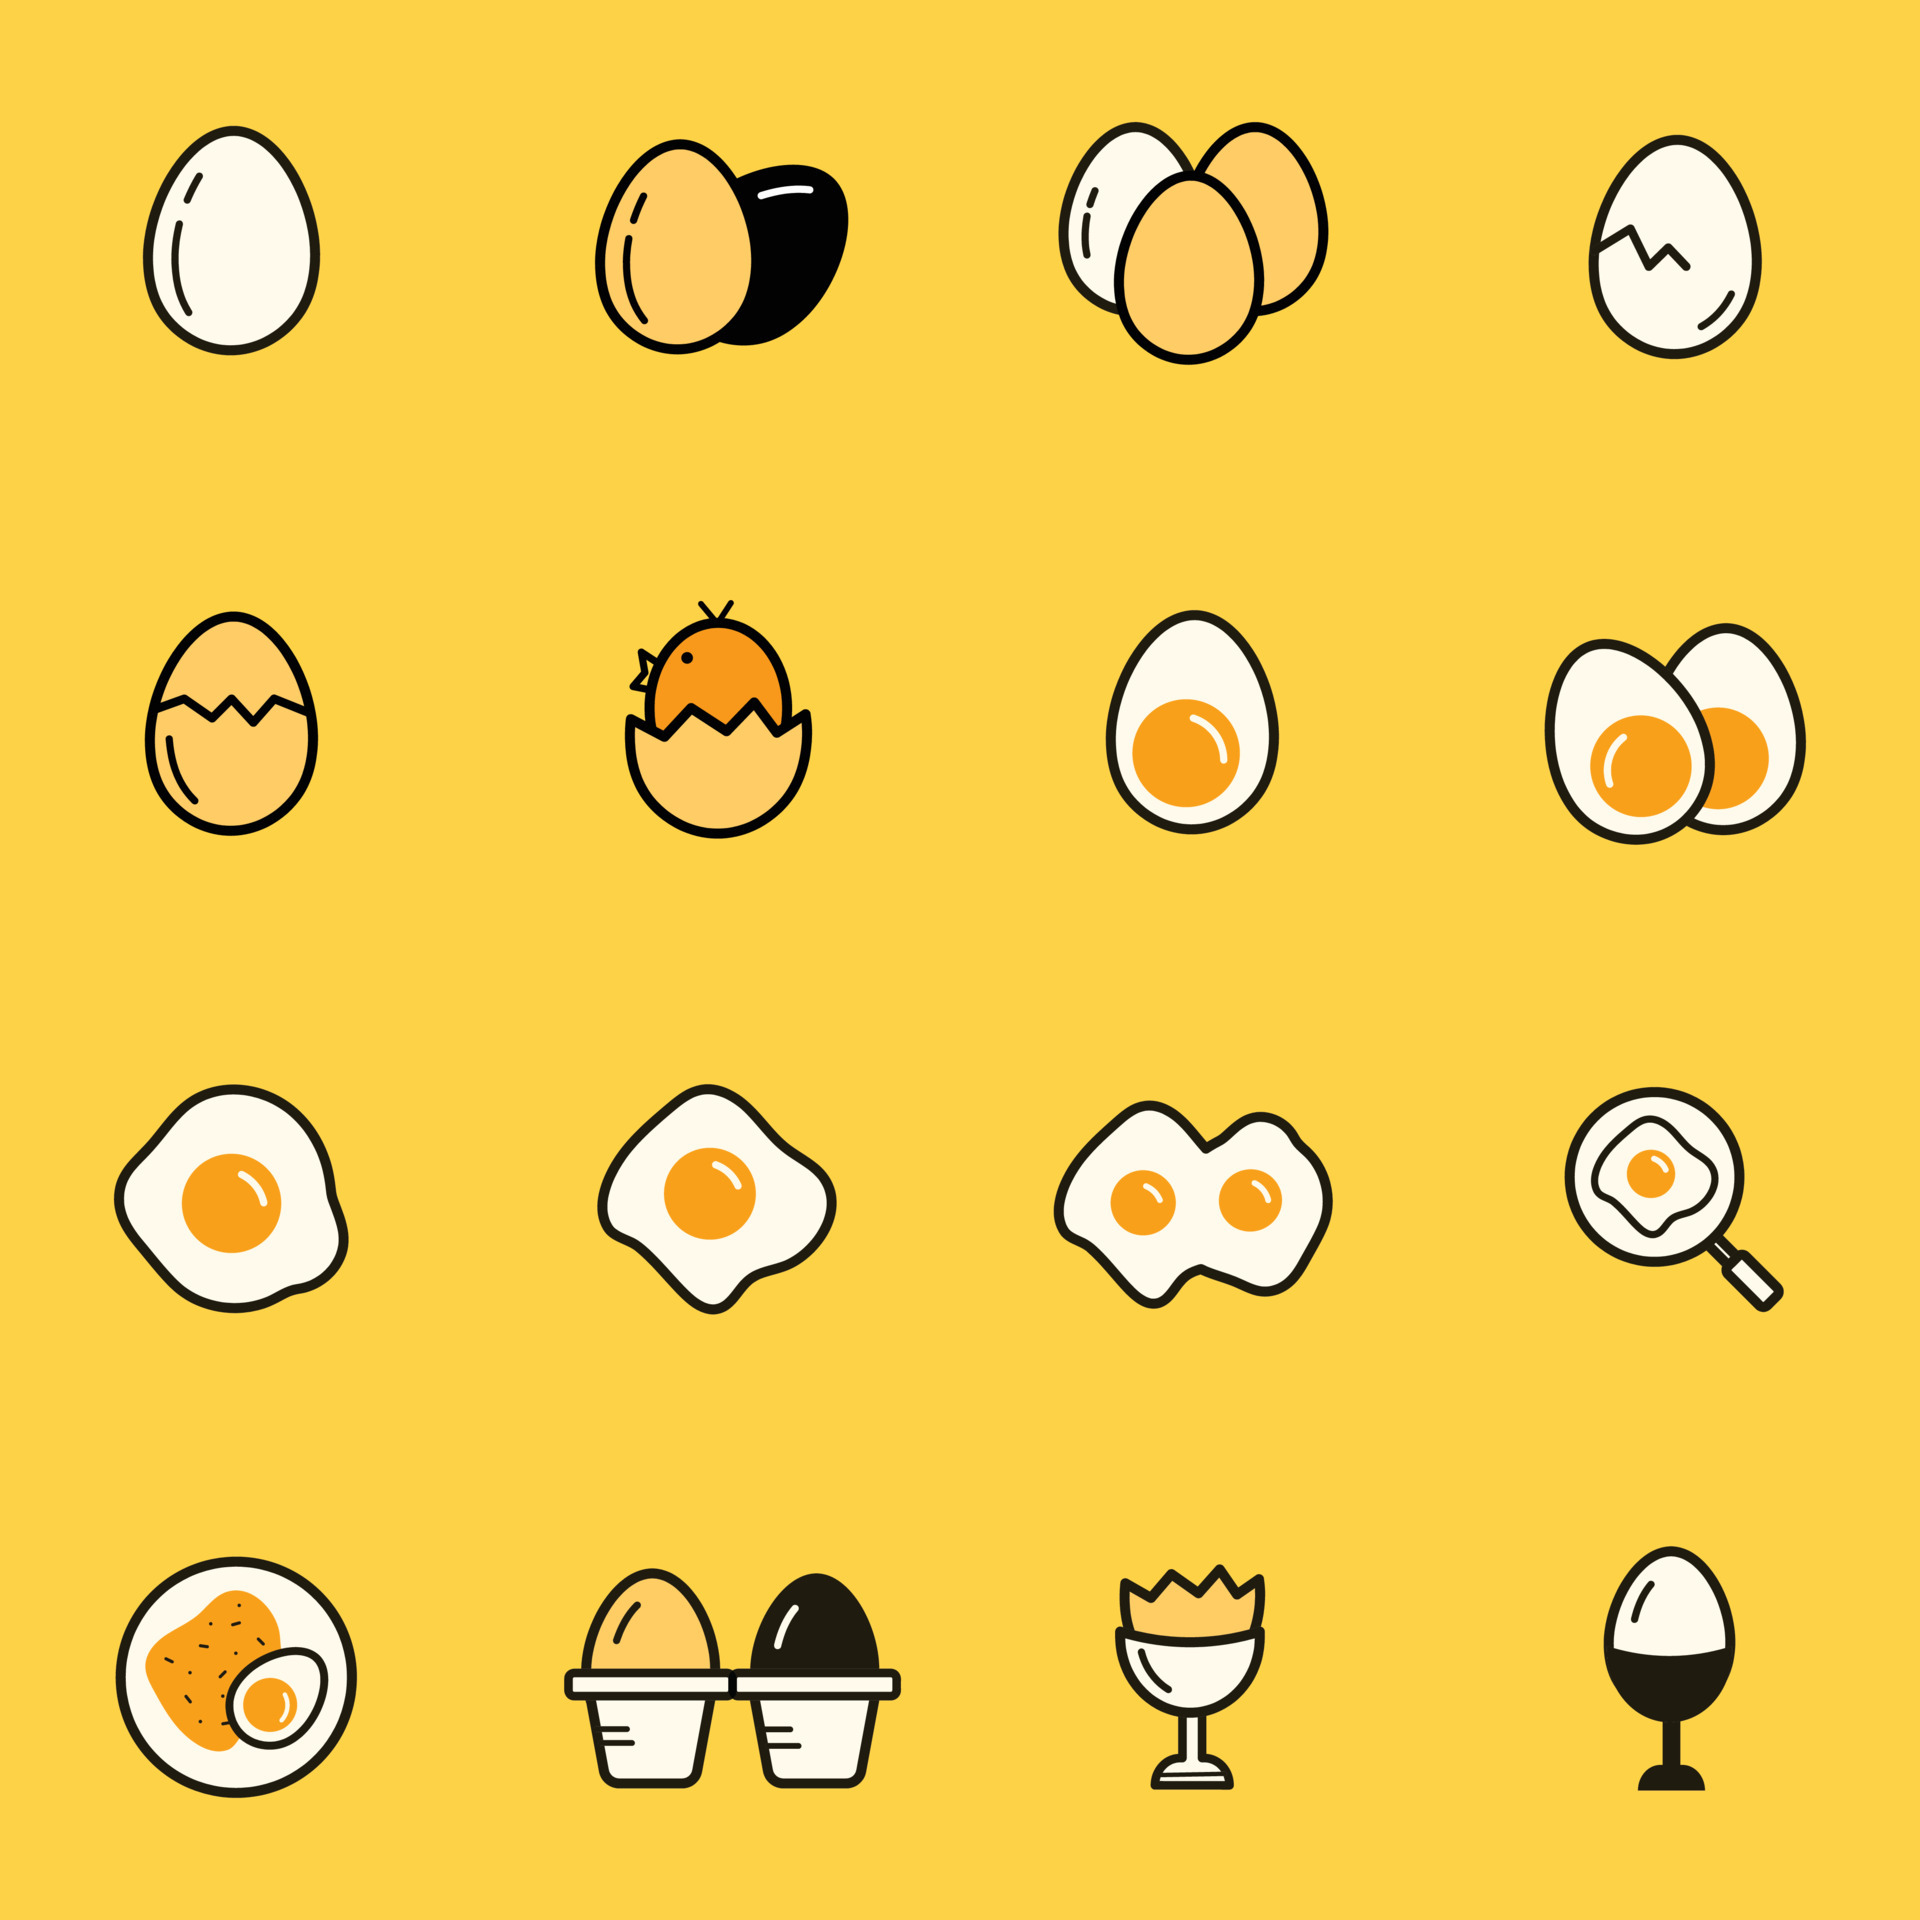 Trứng là một loại thực phẩm rất dinh dưỡng và có thể được chế biến thành nhiều món ăn ngon miệng. Tại đây, chúng tôi sẽ giới thiệu cho bạn những hình ảnh liên quan đến trứng, từ những chiếc bánh mì trứng đơn giản đến những món ăn đẳng cấp cao. 